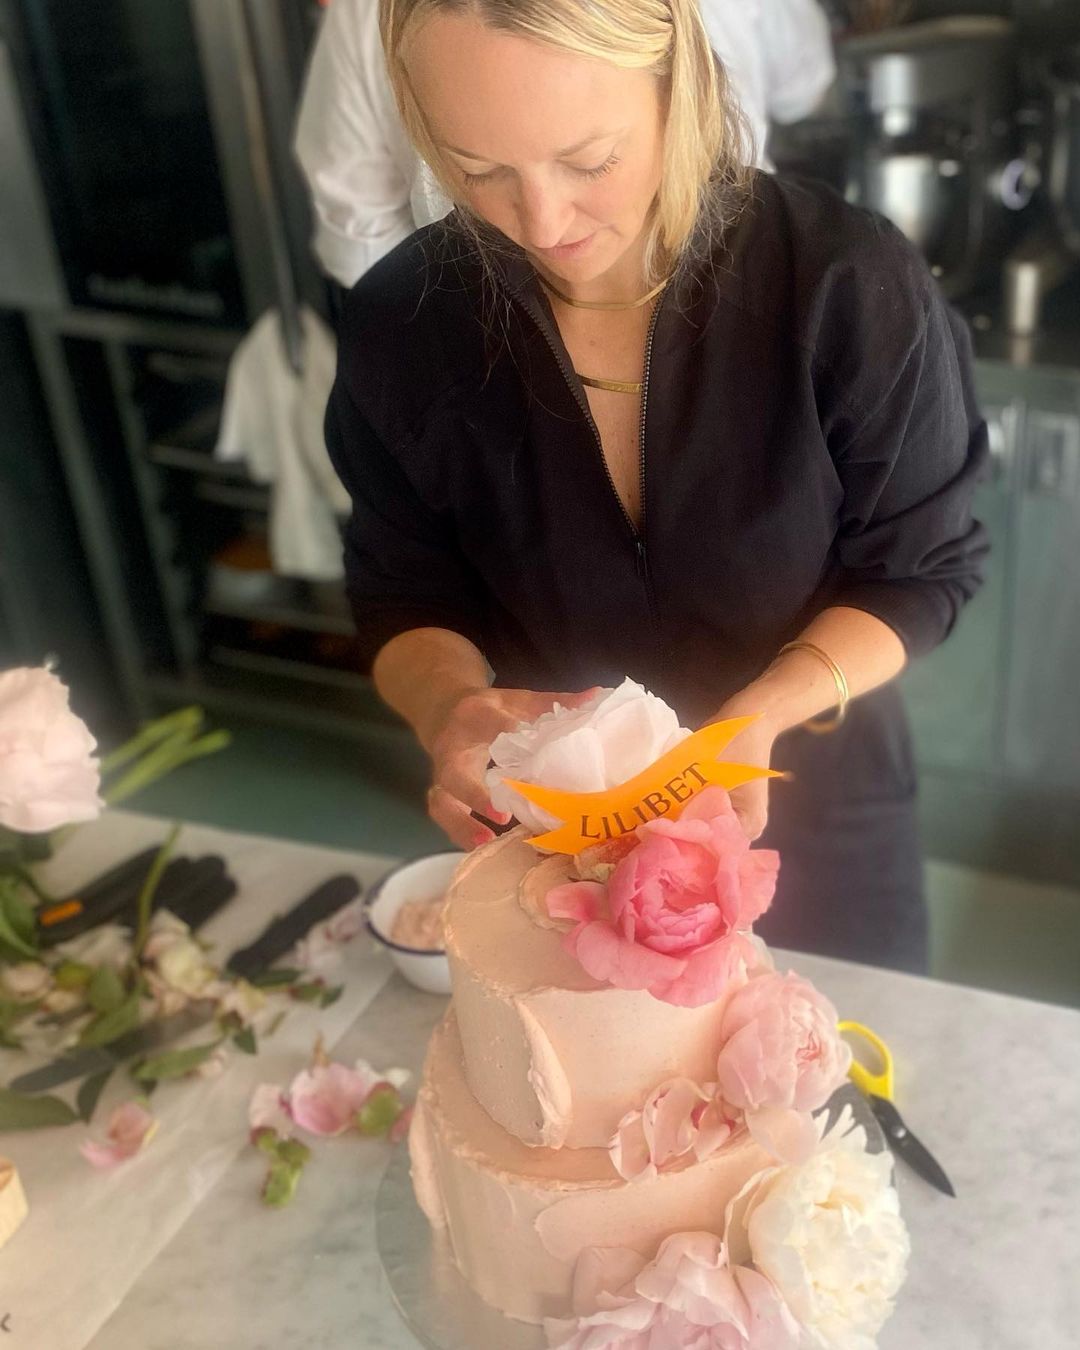 Лондонская пекарня показала торт для дня рождения Лилибет